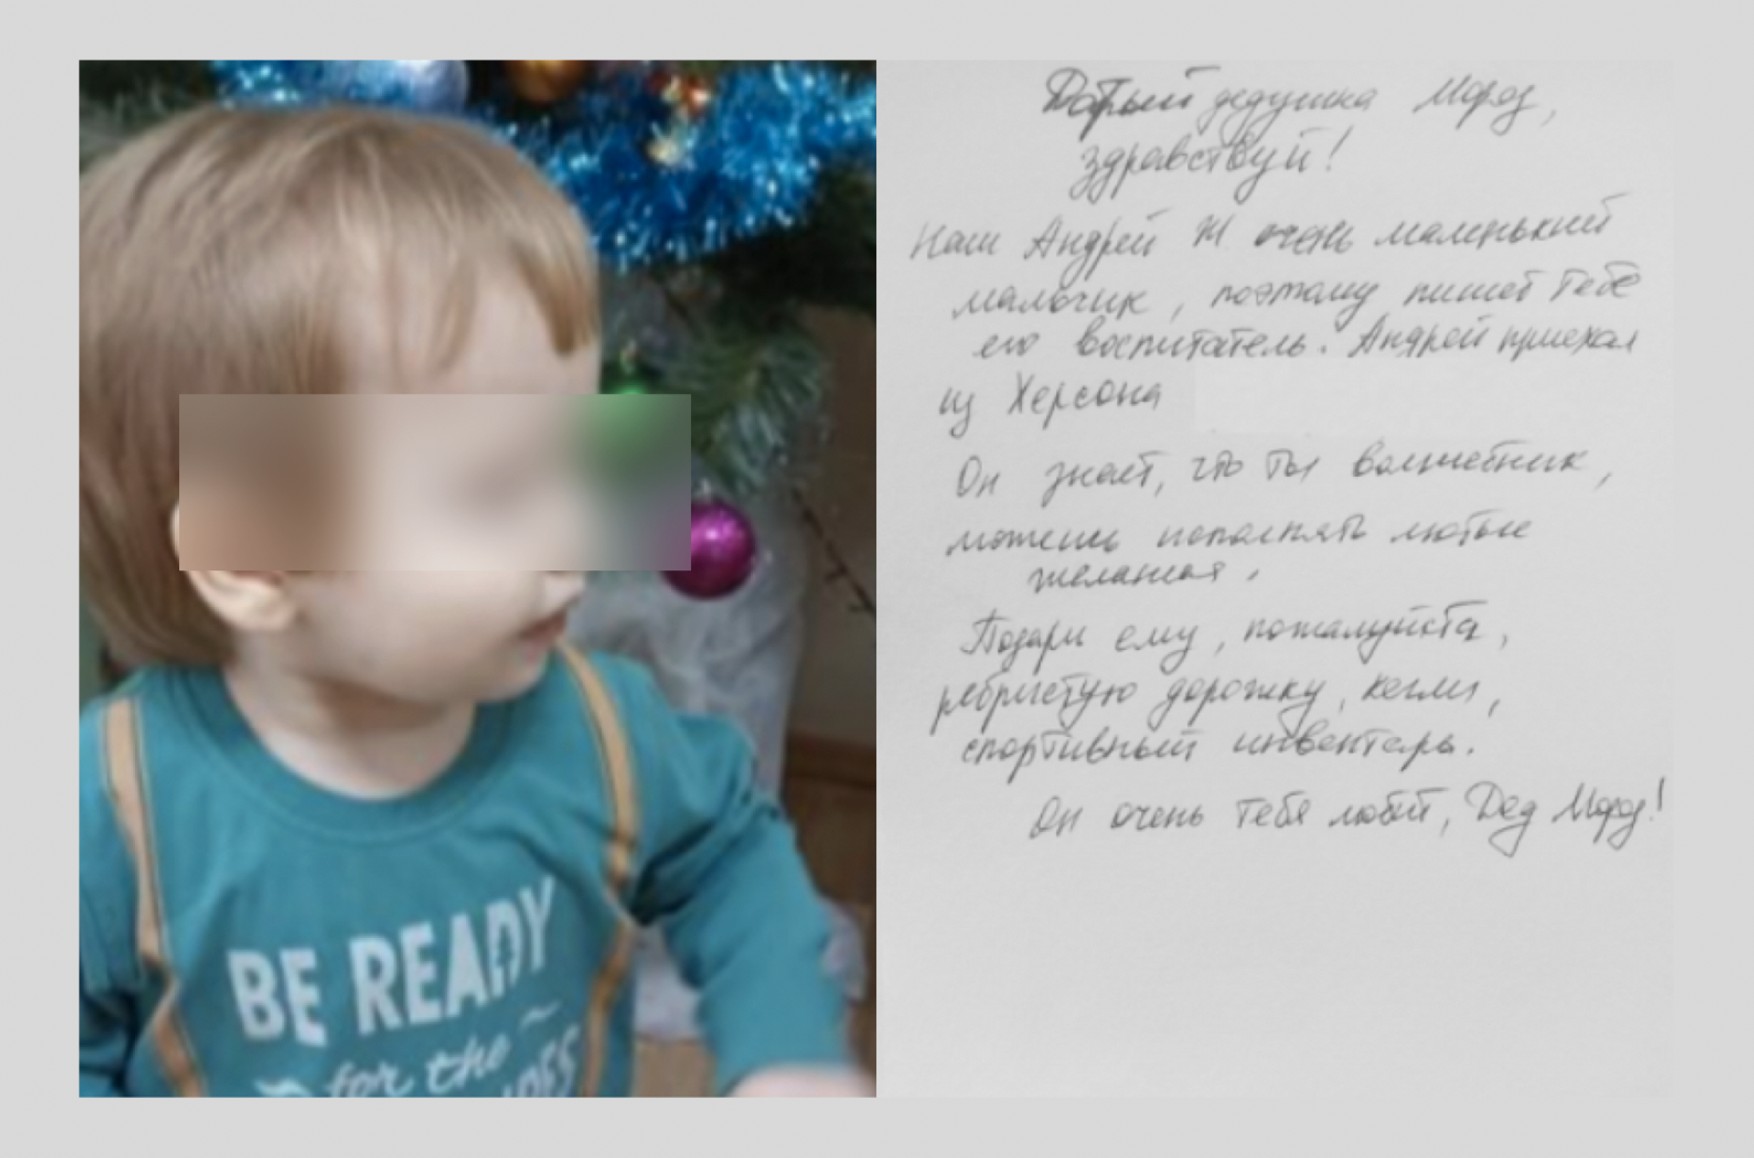 Россия вывезла 14 сирот младше пяти лет из Херсона в крымский детдом, это запрещено Женевской конвенцией — «Вёрстка»